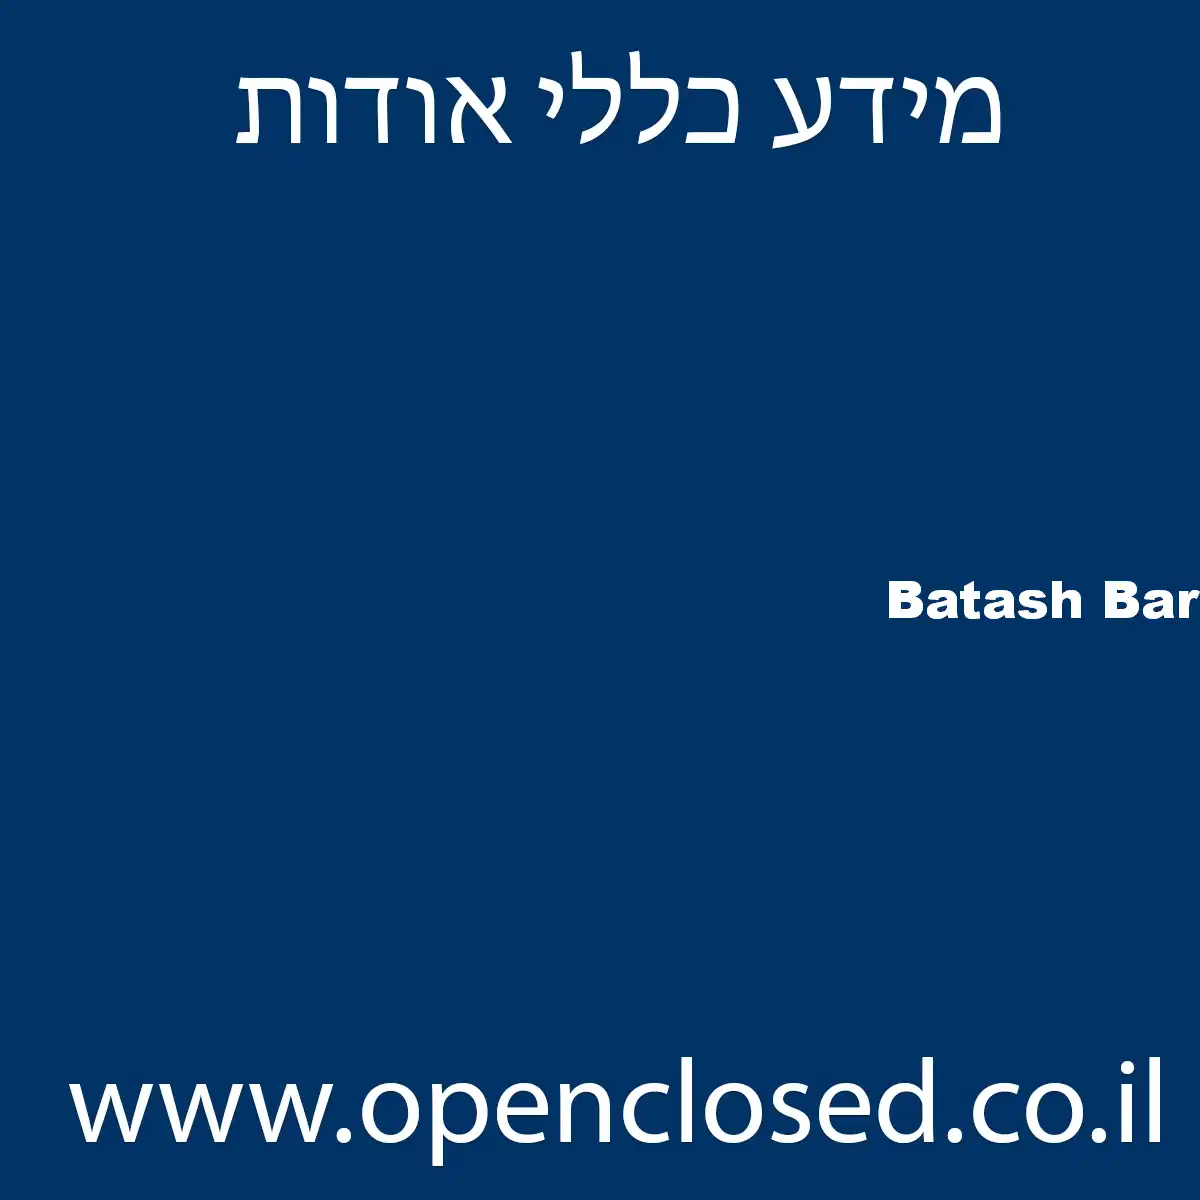 Batash Bar